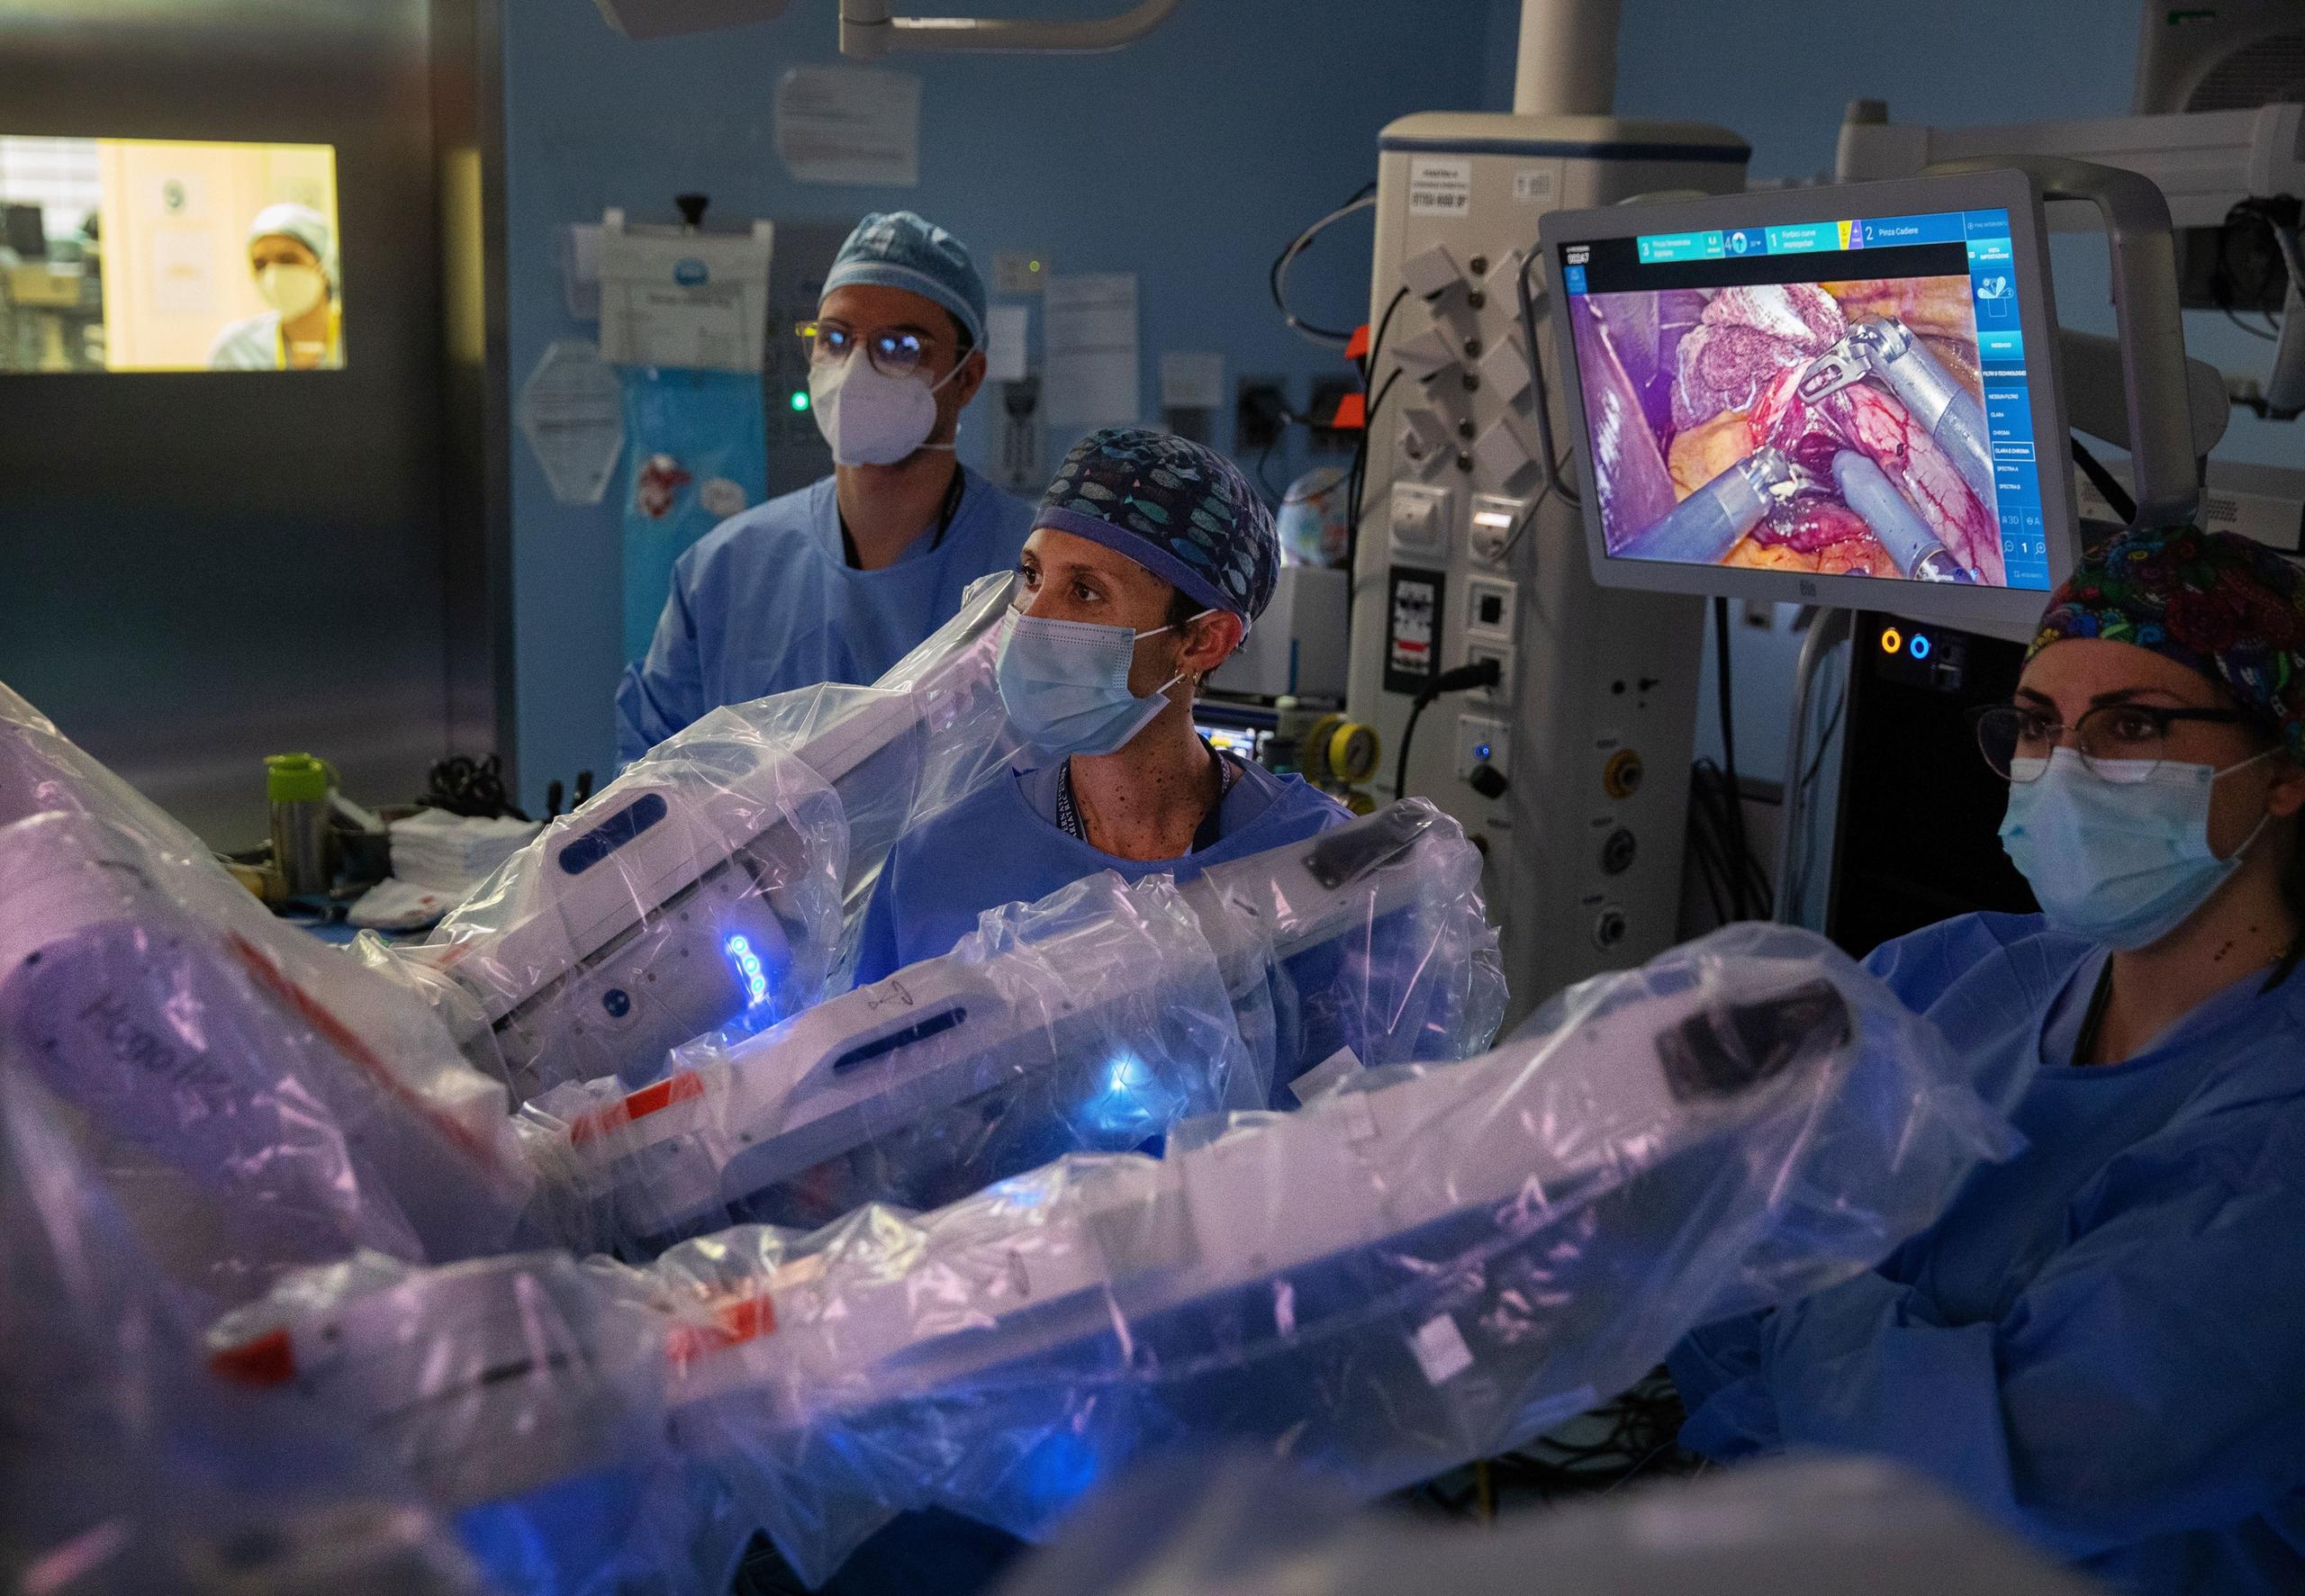 Chirurgia robotica, al Sant’Orsola rimossi due tumori maligni nella stessa operazione